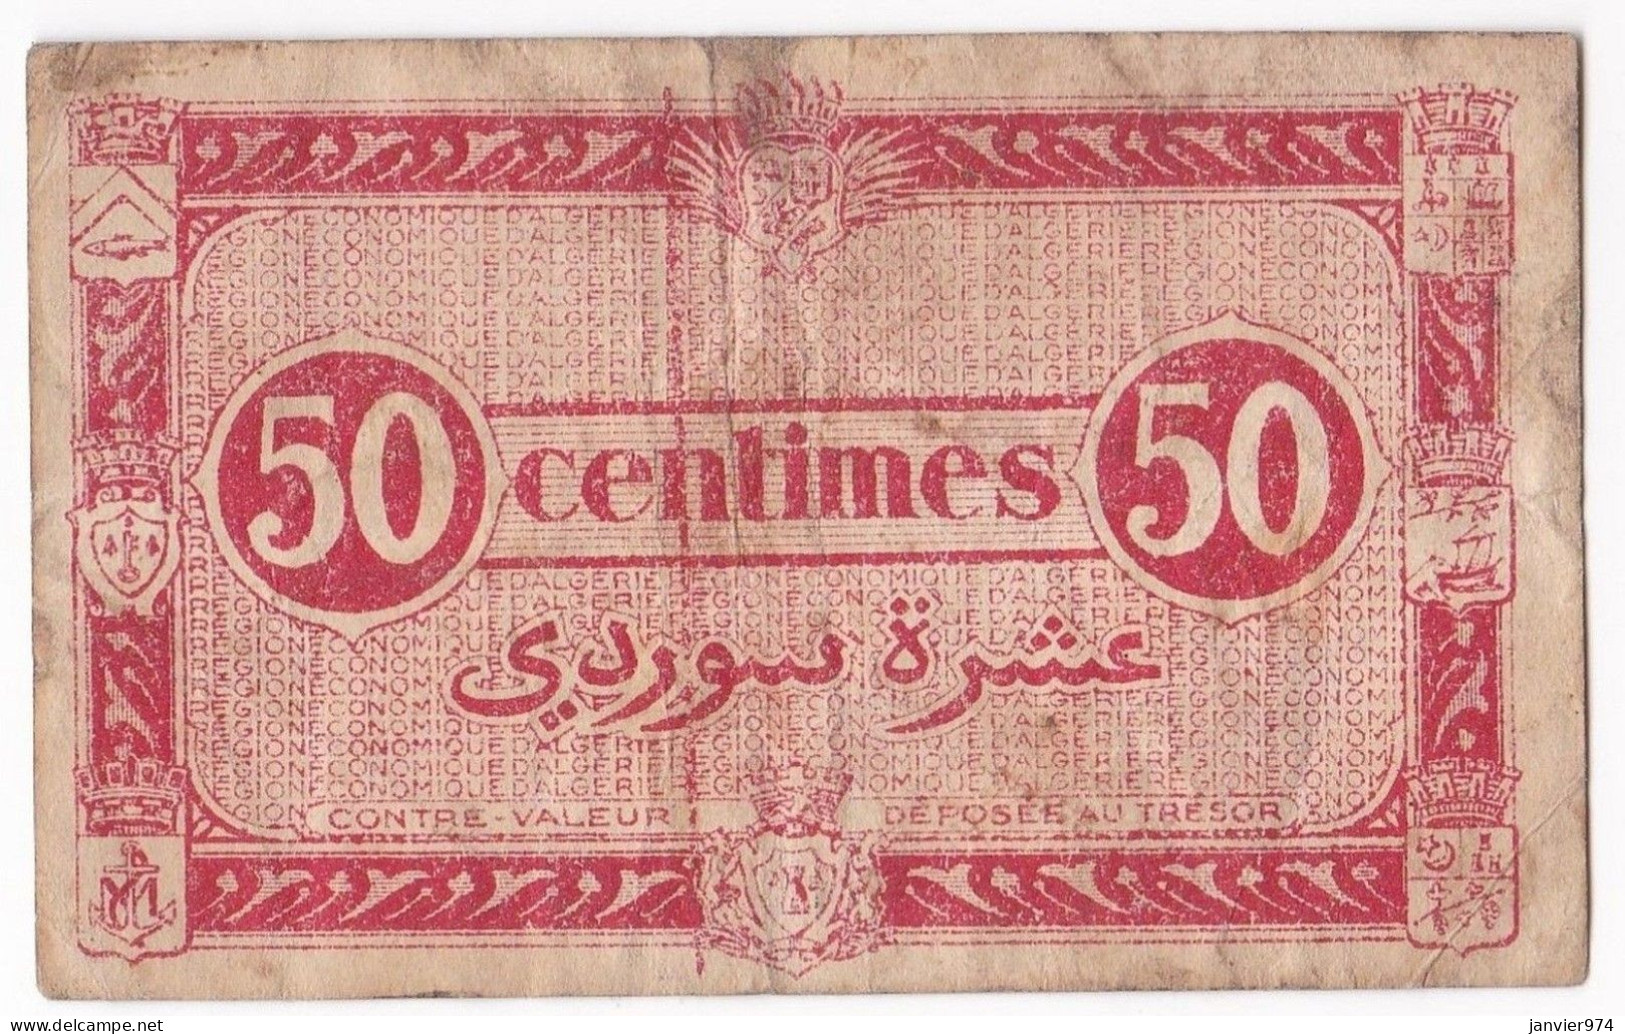 Région Economique D’Algérie 50 Centimes 1944, 2e T Serie I 2 N° 876572, Billet Colonial Circulé - Algerien